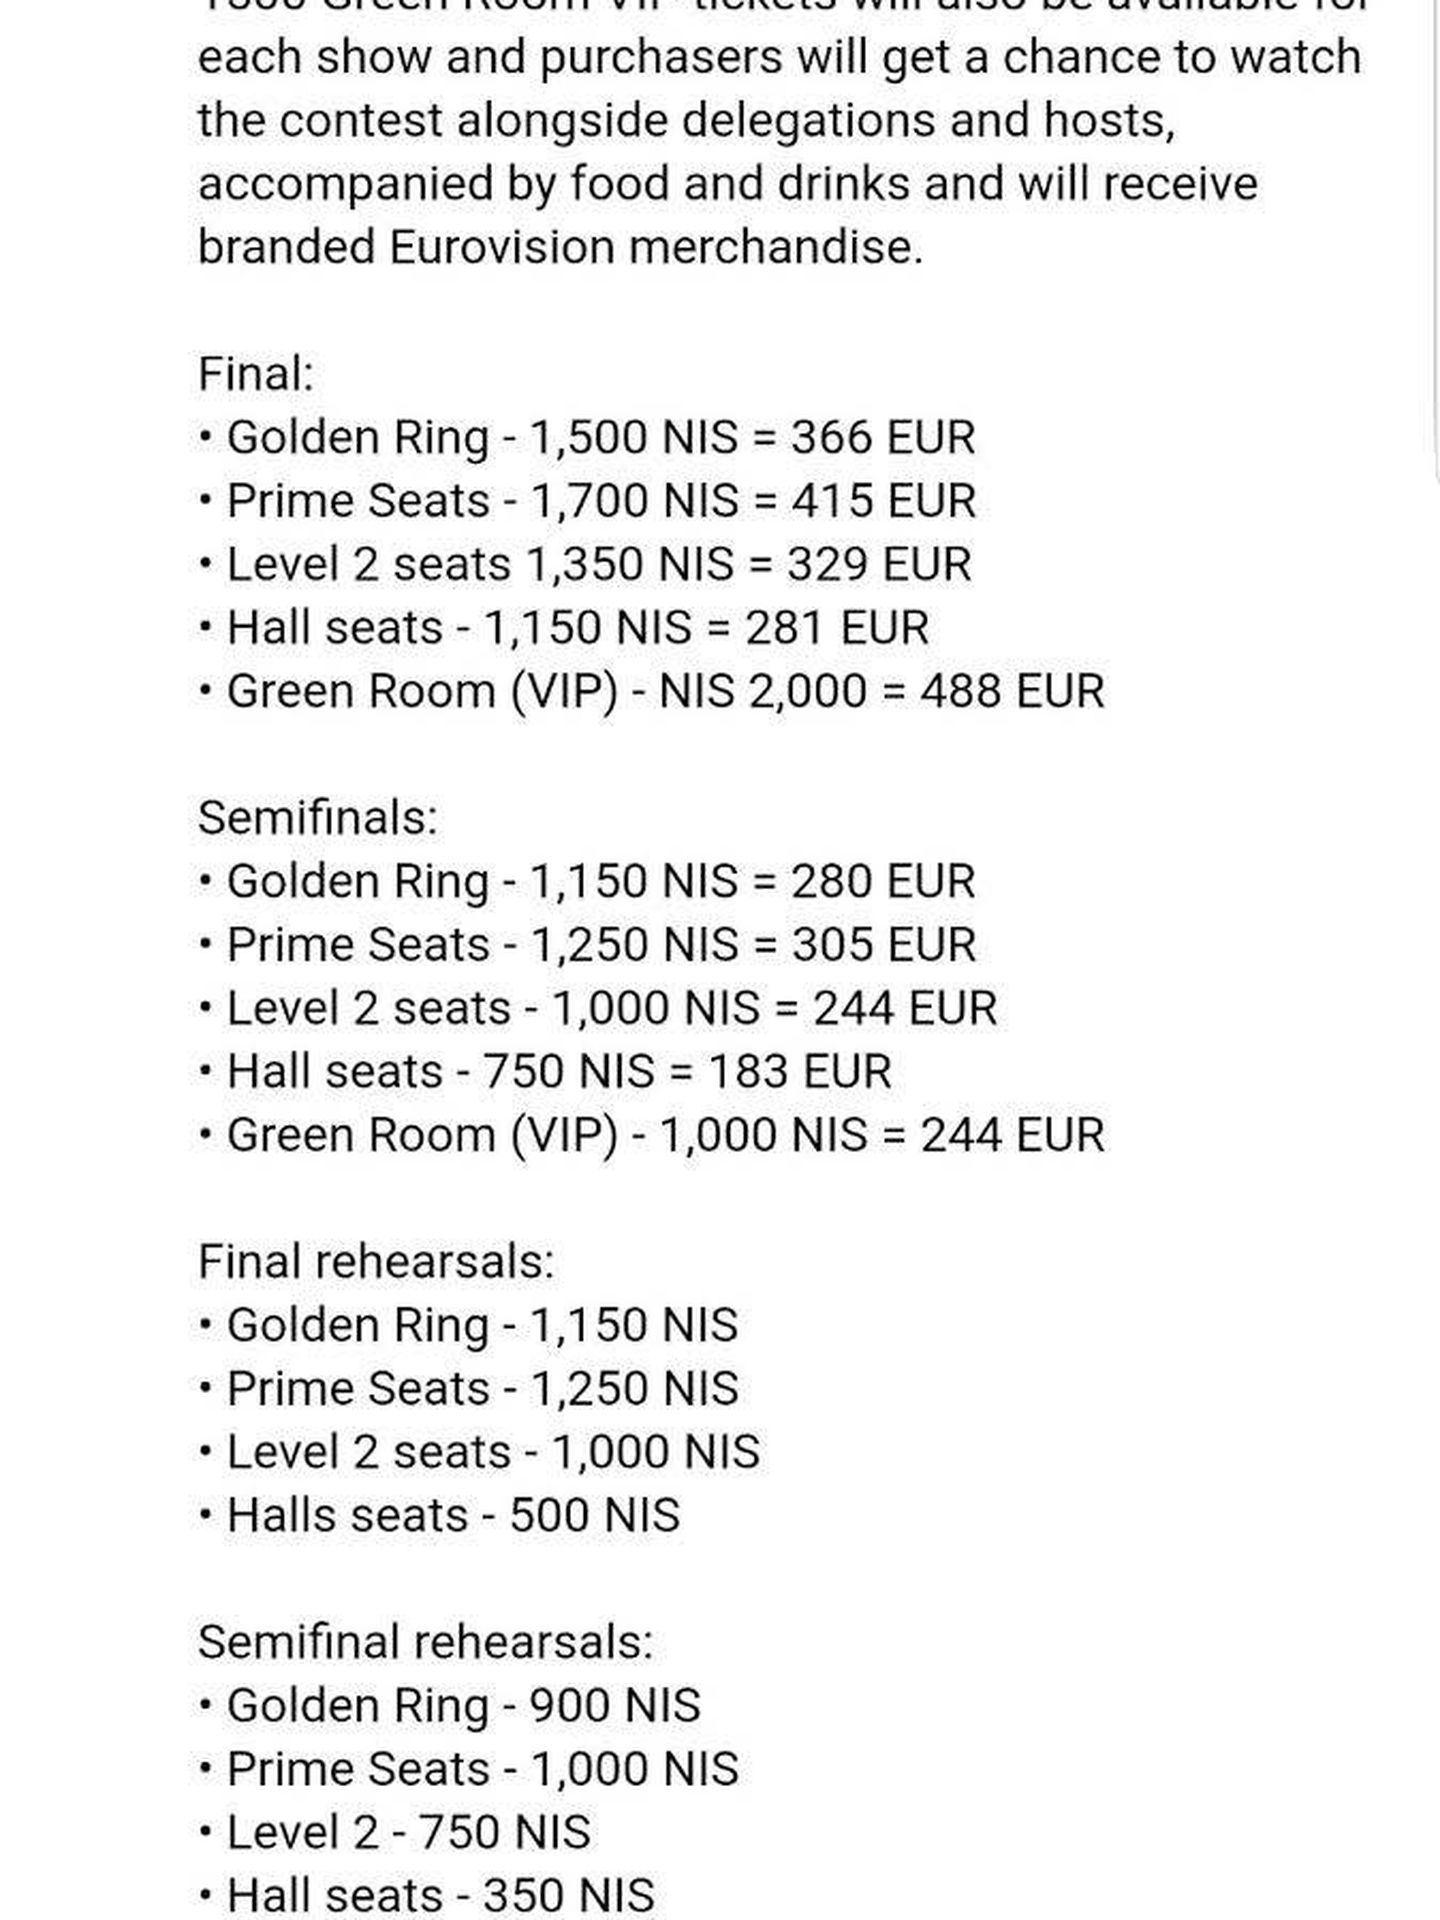 Precios de las entradas para 'Eurovision2019'.